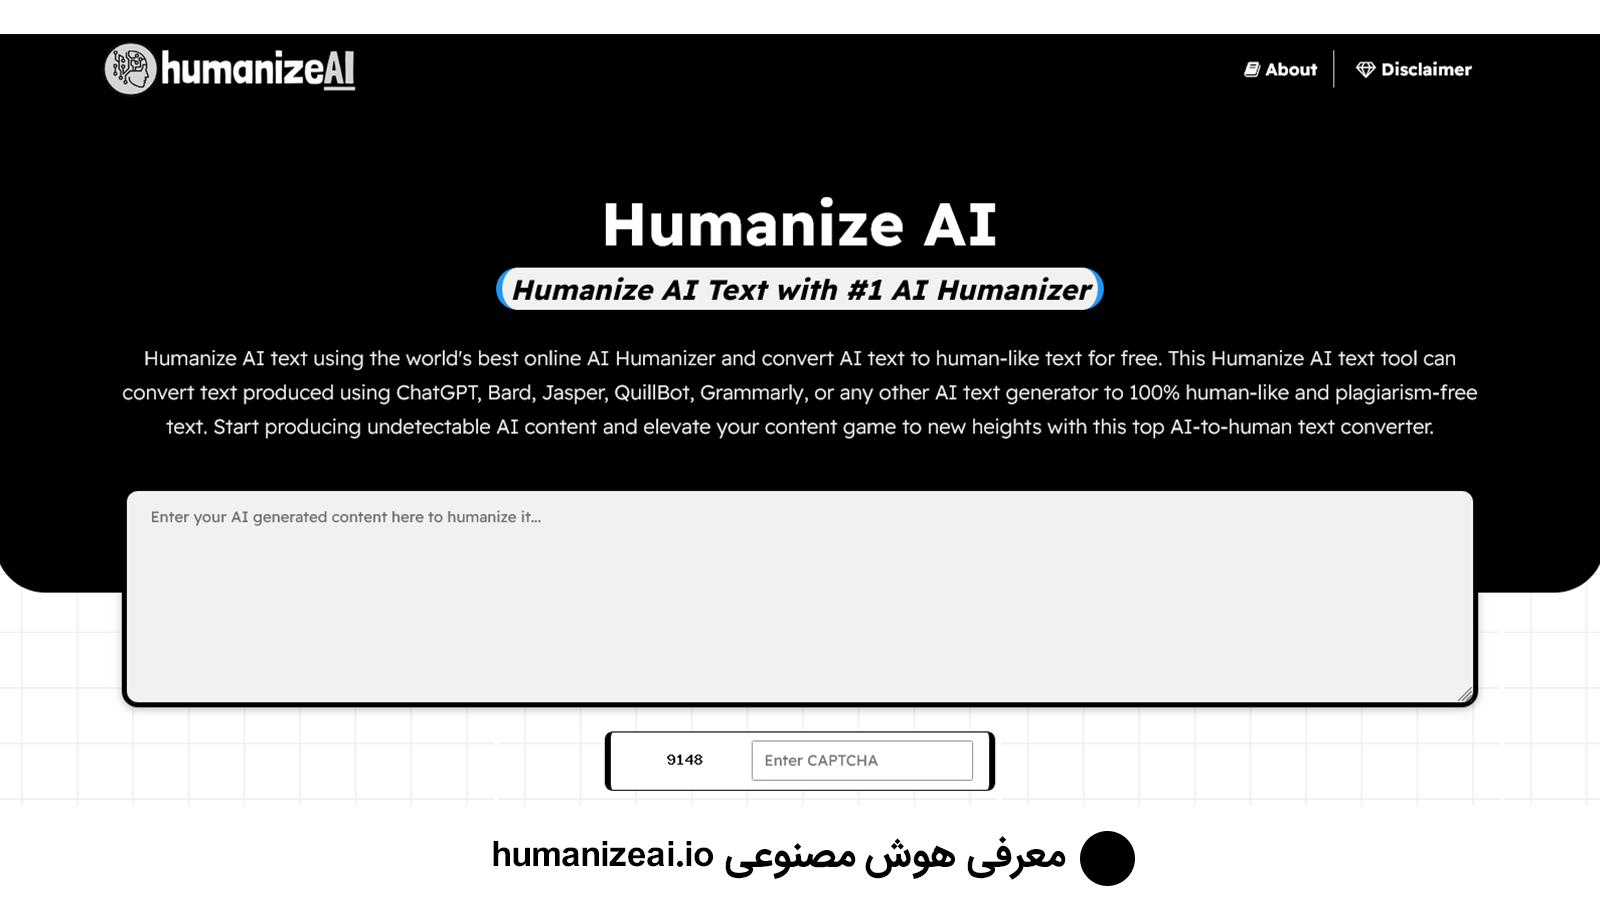 هوش مصنوعی humanizeai.io